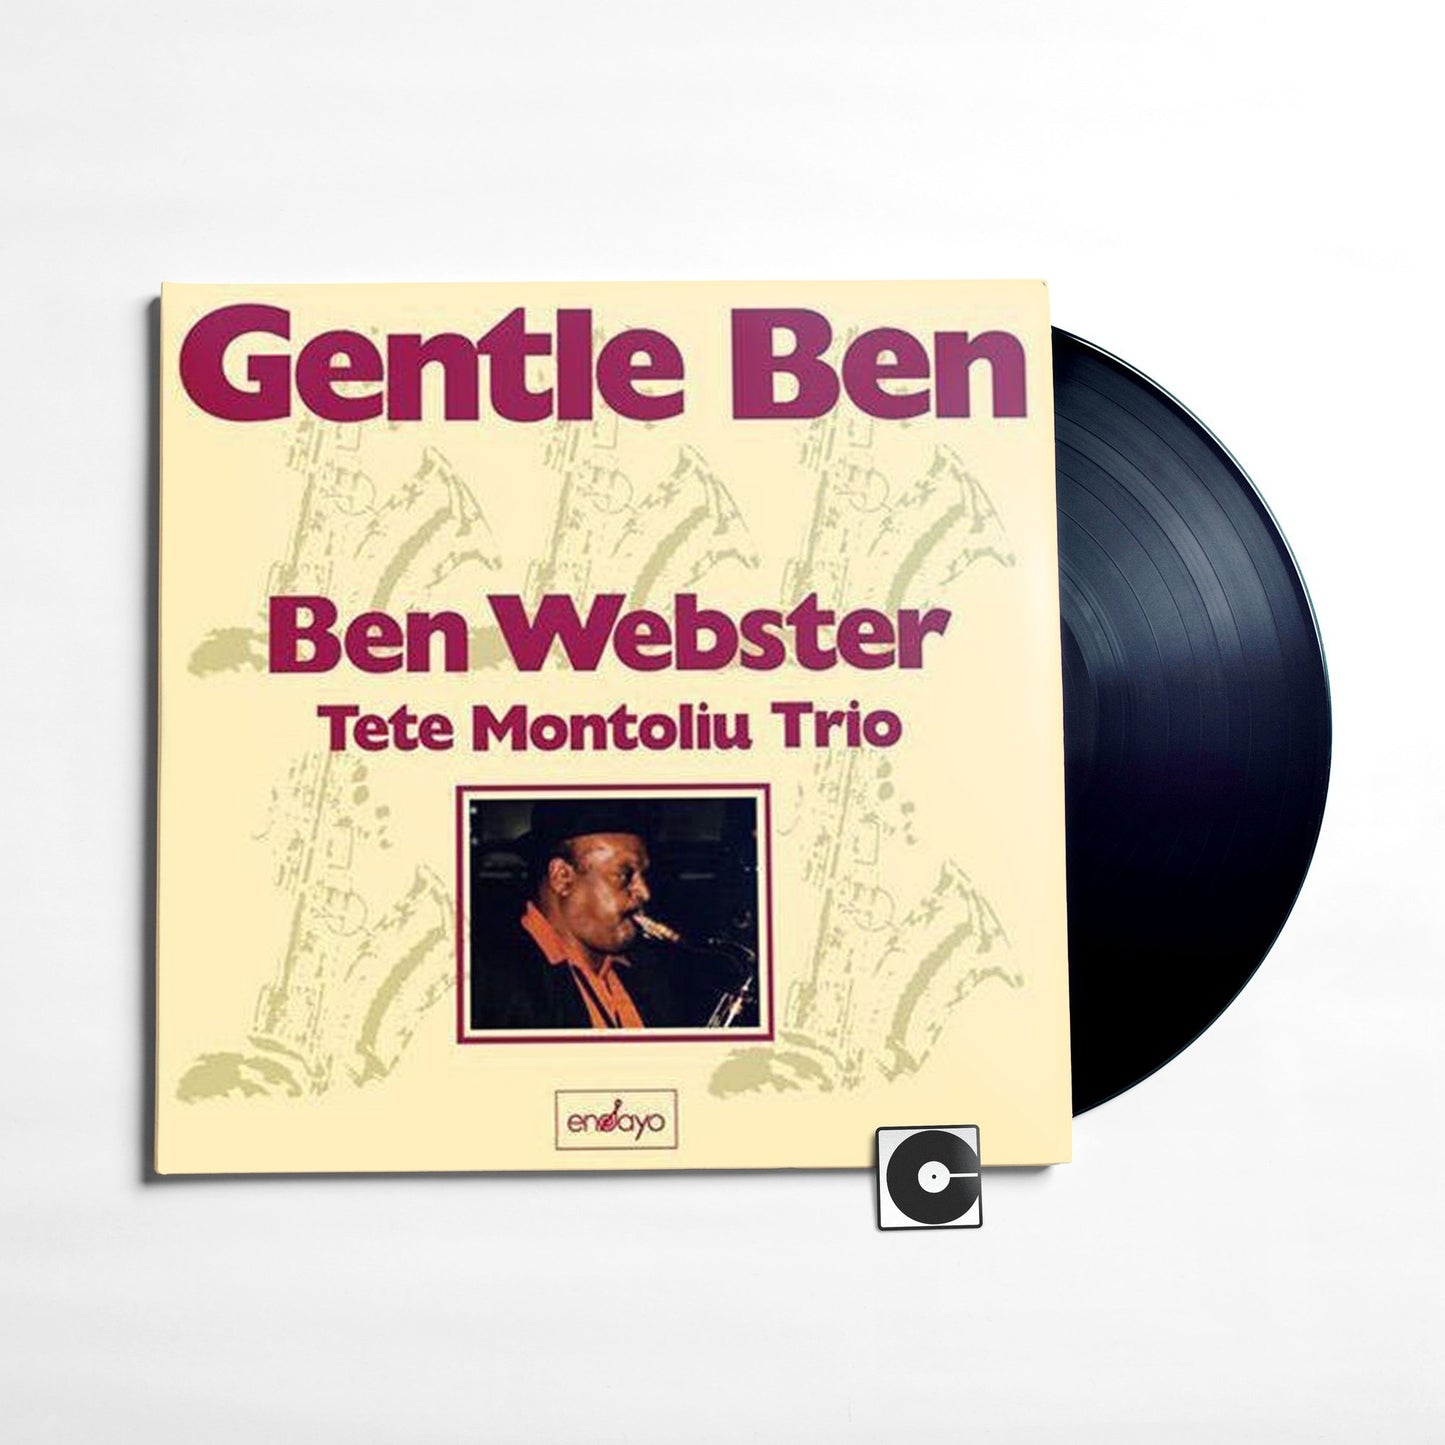 Ben Webster - "Gentle Ben" Analogue Productions